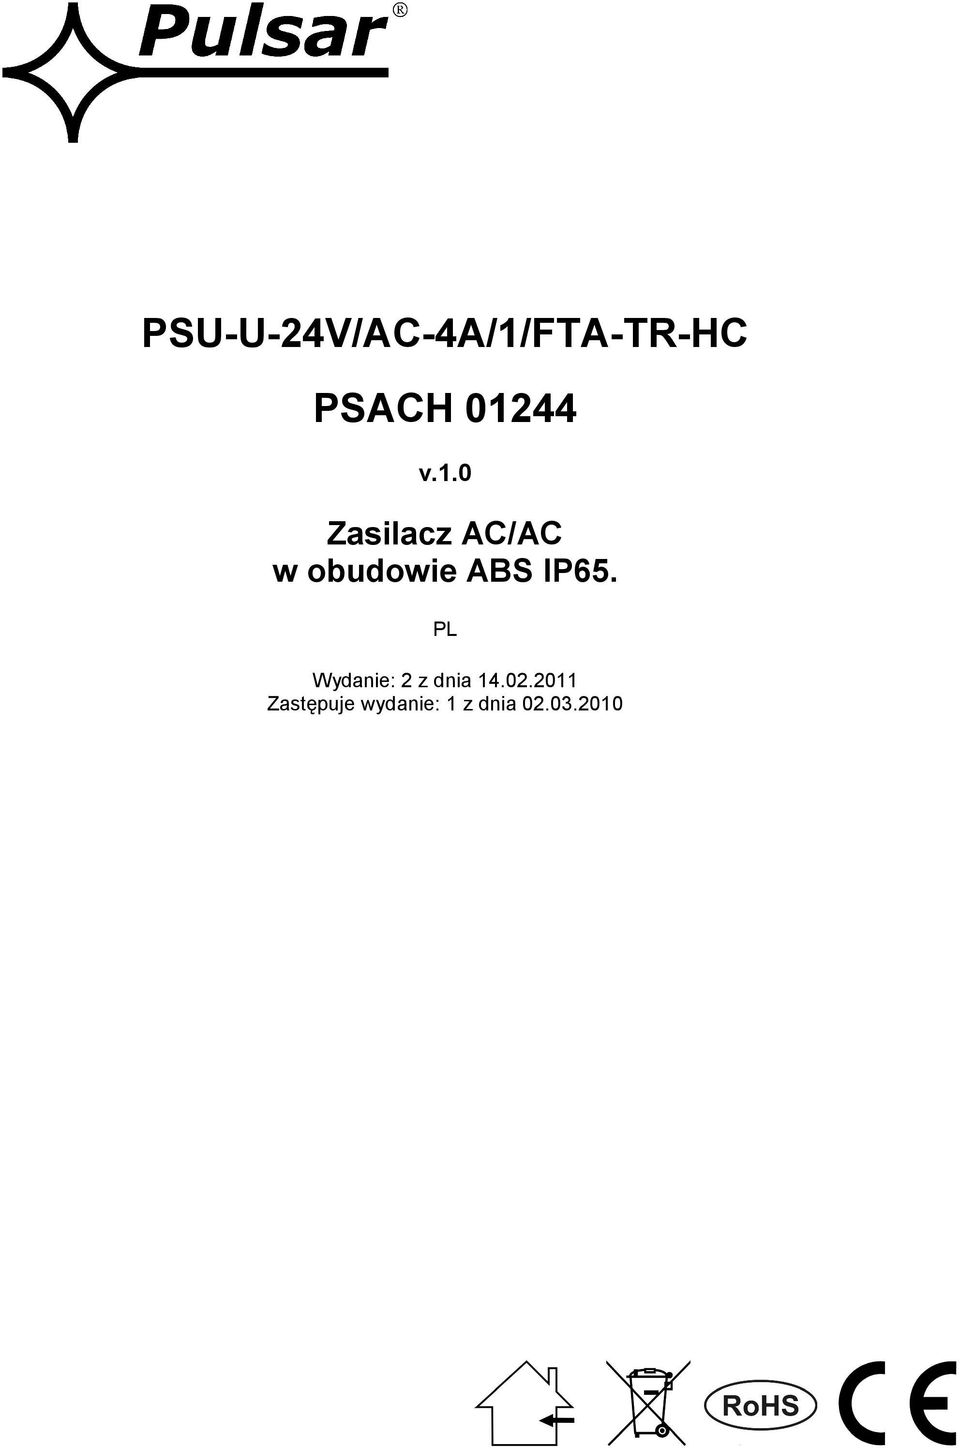 ABS IP65. PL Wydanie: 2 z dnia 14.02.